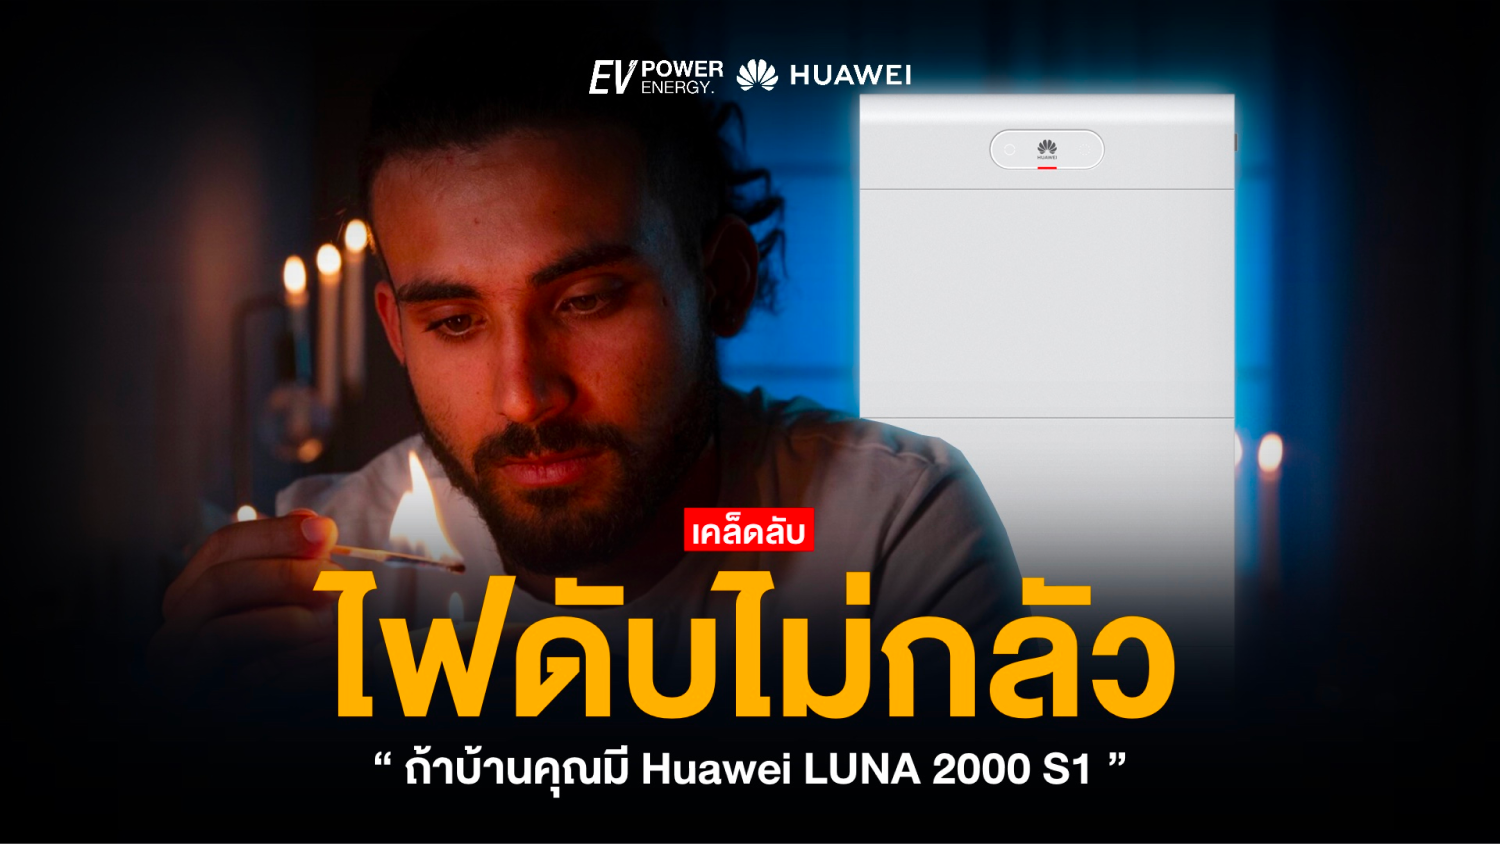 ไฟดับก็ไม่กลัว! ถ้าบ้านคุณมี Huawei LUNA 2000 S1